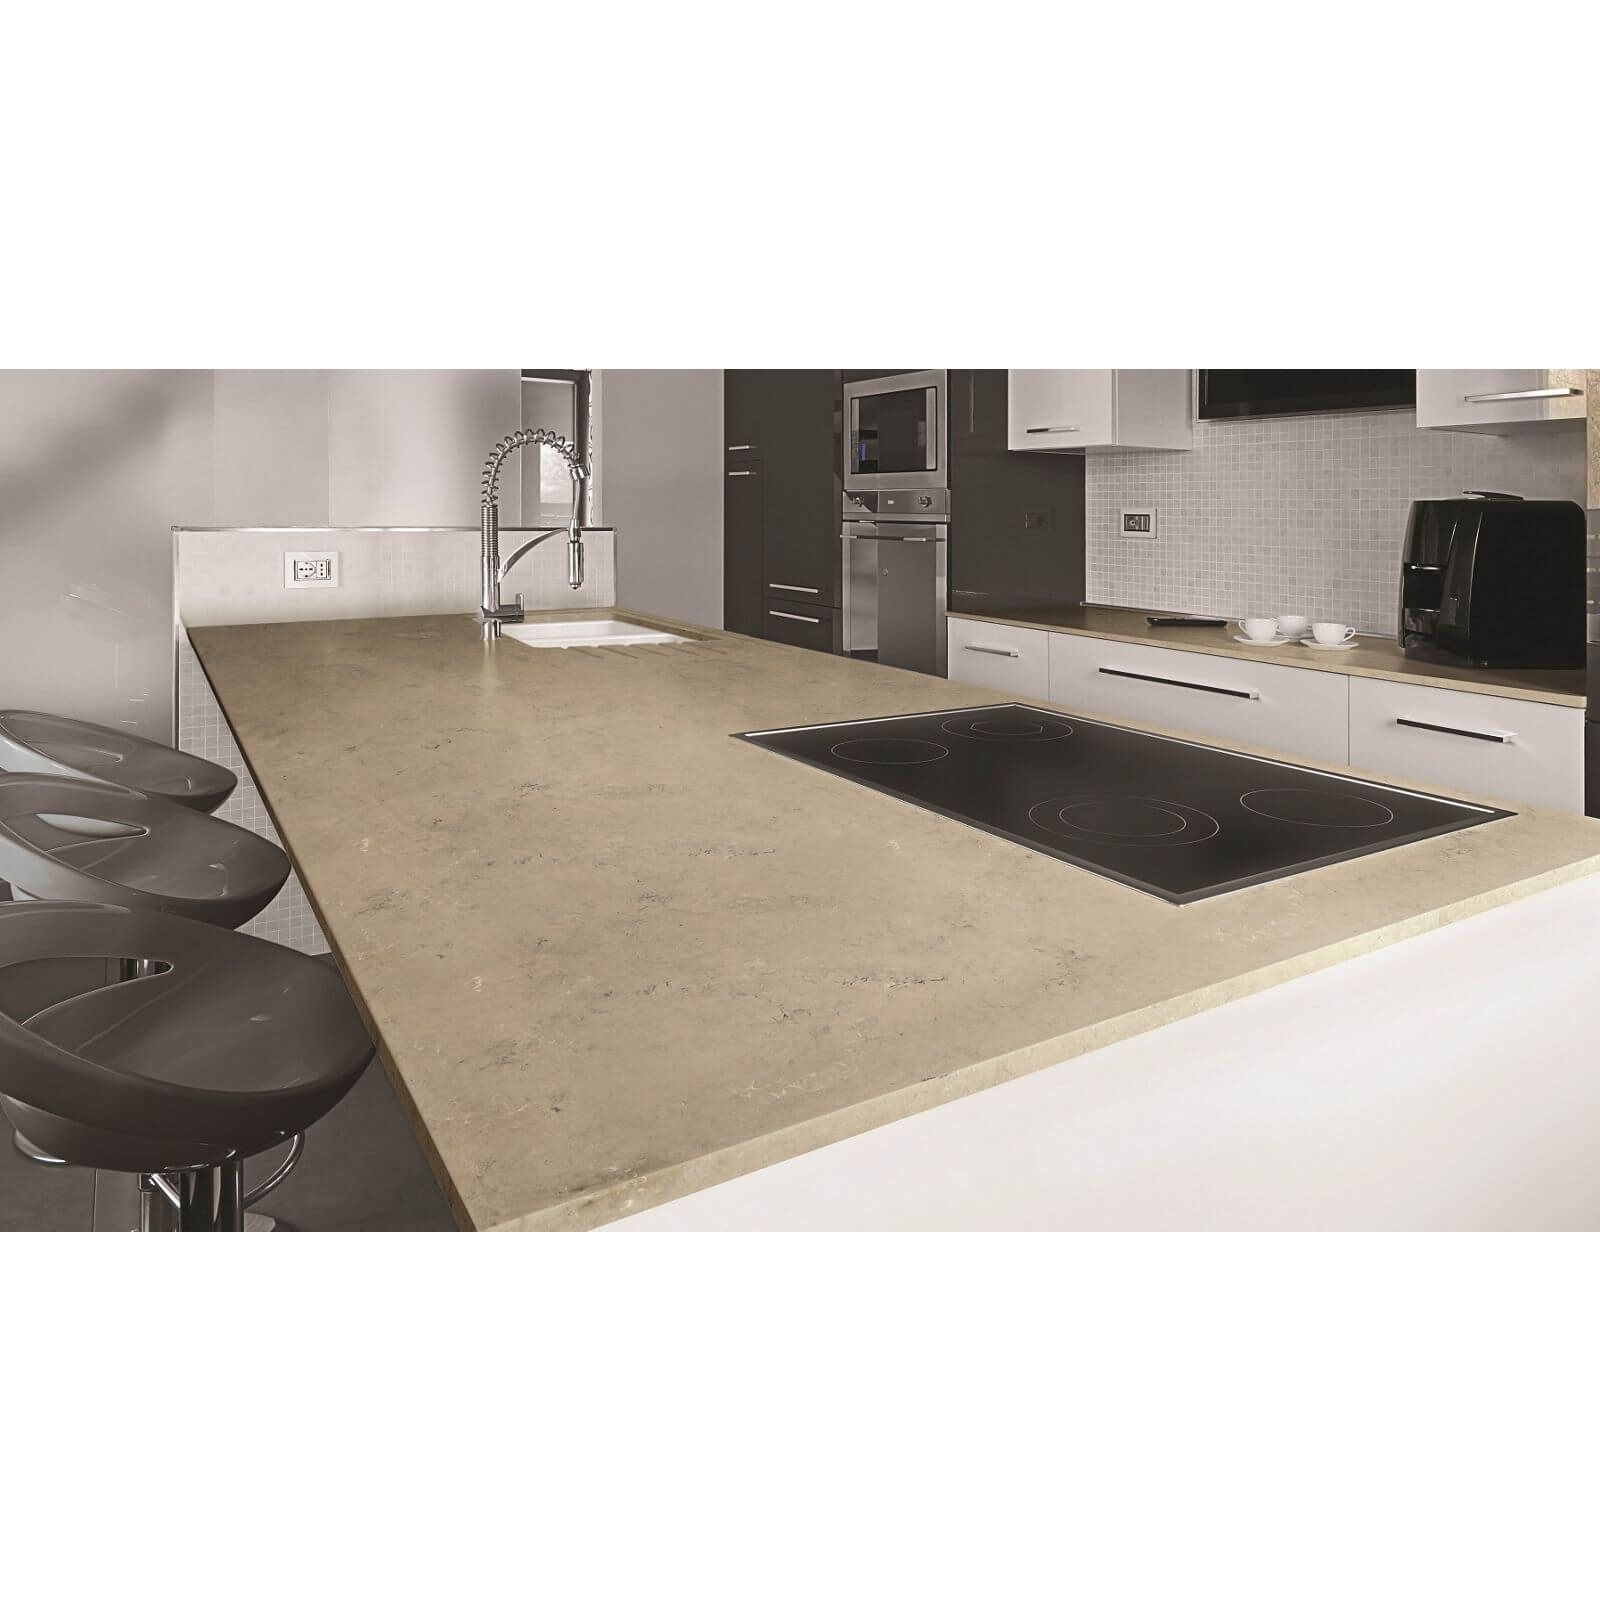 Minerva Desert Rock Kitchen Worktop - 150 x 65 x 2.5cm